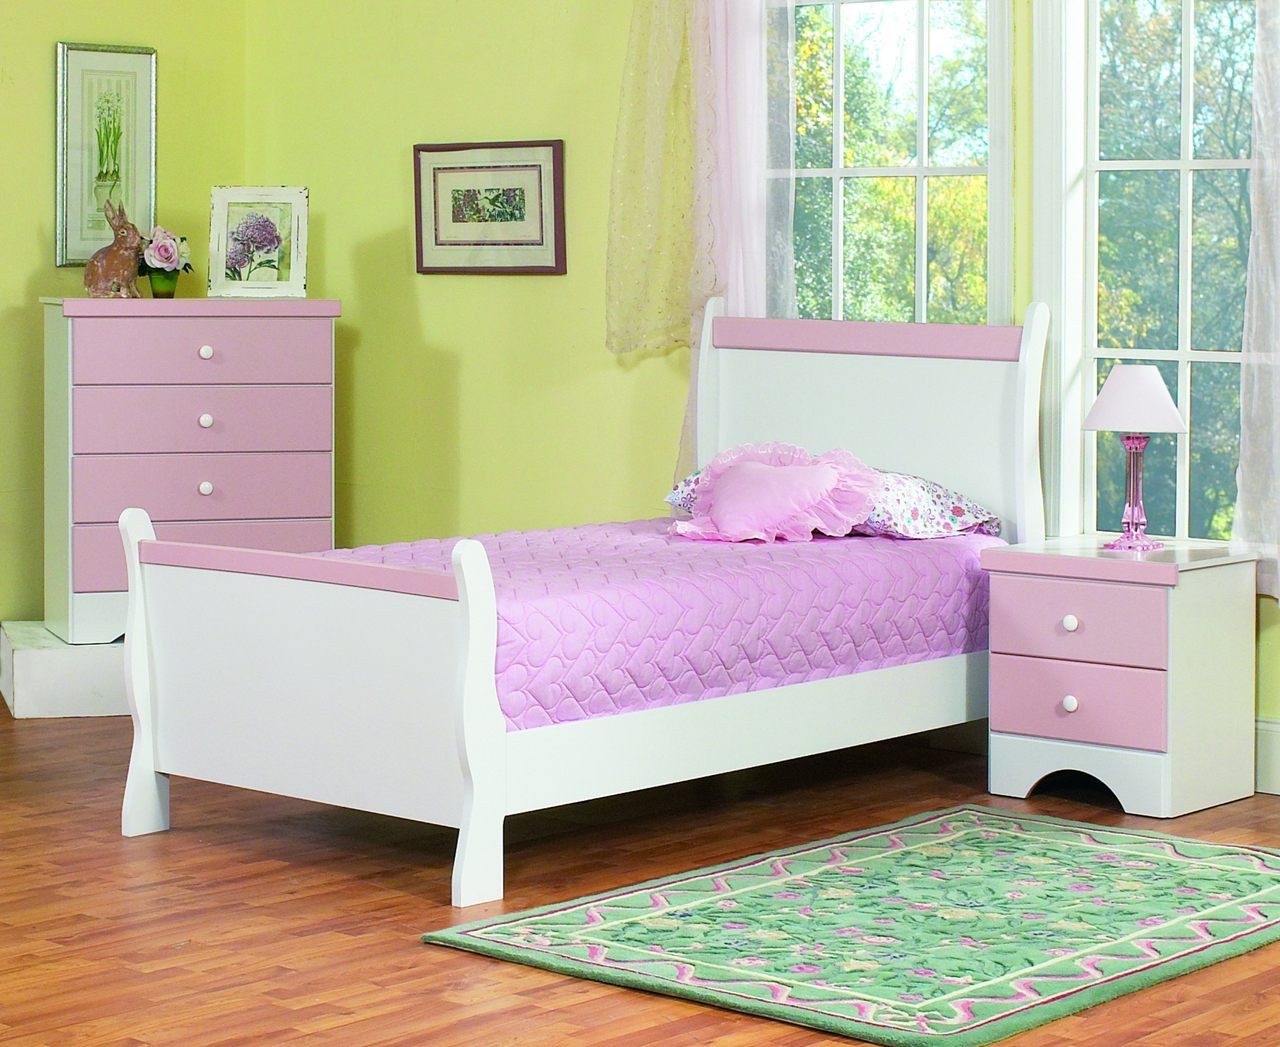 Kids Bed Room Set
 The Captivating Kids Bedroom Furniture Amaza Design